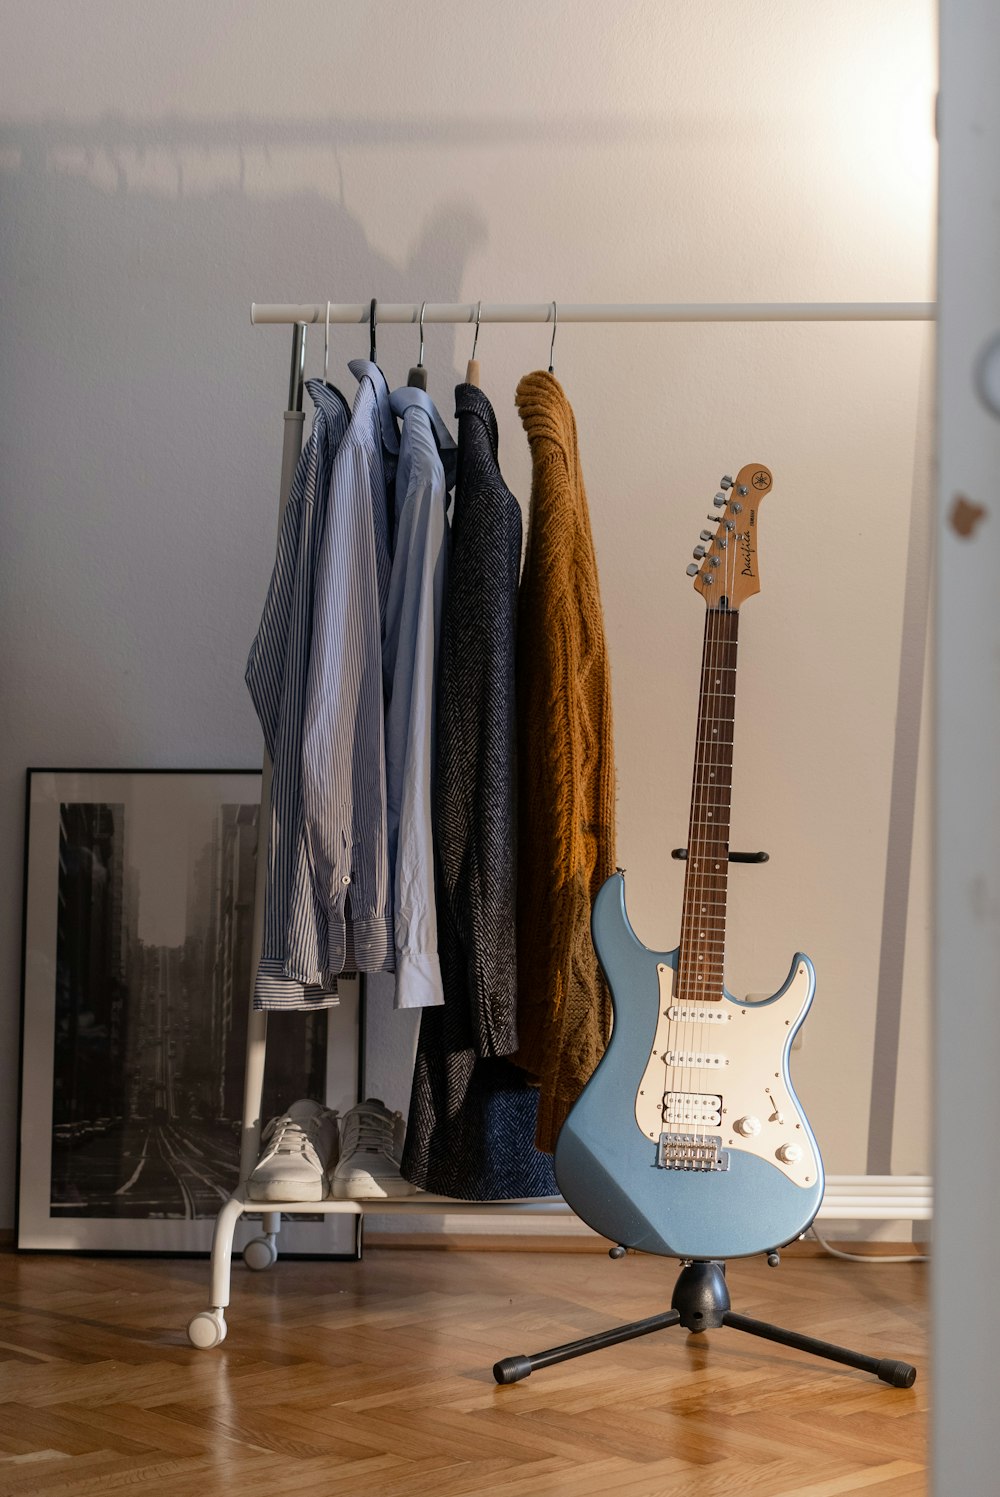 Chitarra elettrica Stratocaster marrone e bianca